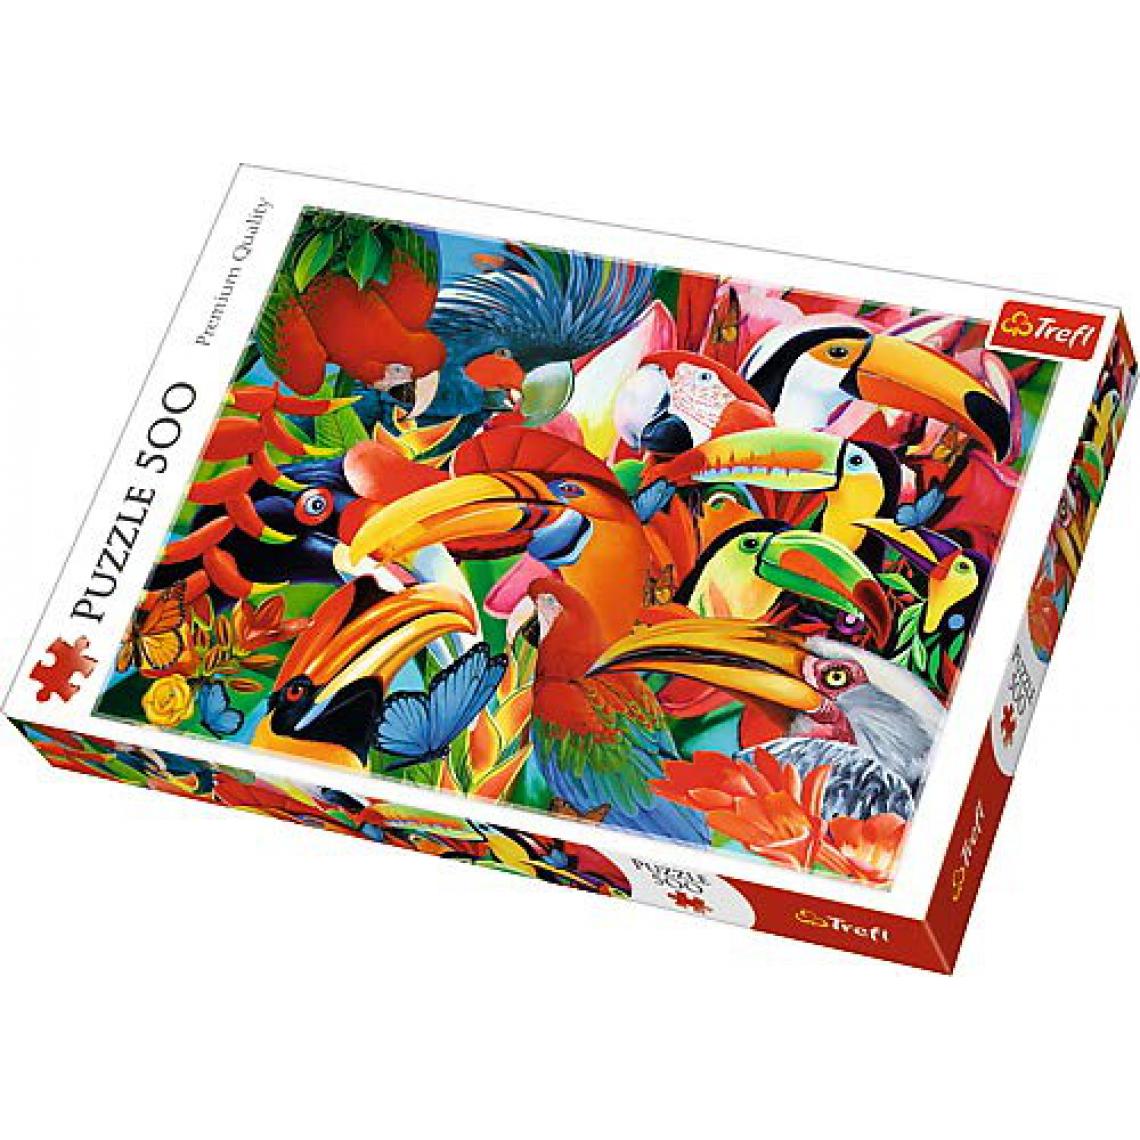 Trefl - trefl Puzzle modèle Oiseaux colorés 500 pièces, 37328, Multicolore - Animaux